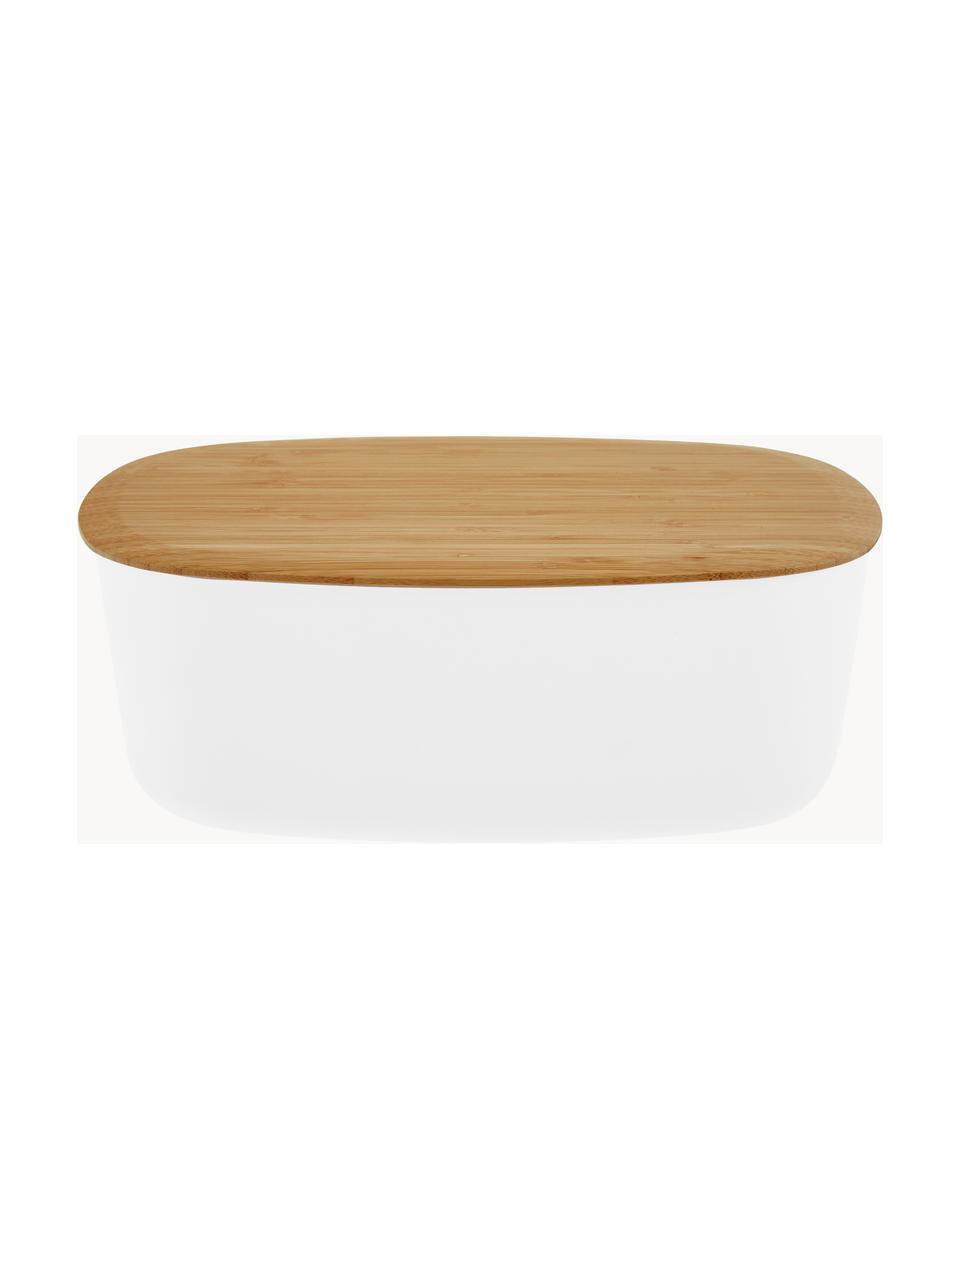 Boîte à pain avec couvercle en bambou Box-It, Blanc, bois clair, larg. 35 x haut. 12 cm